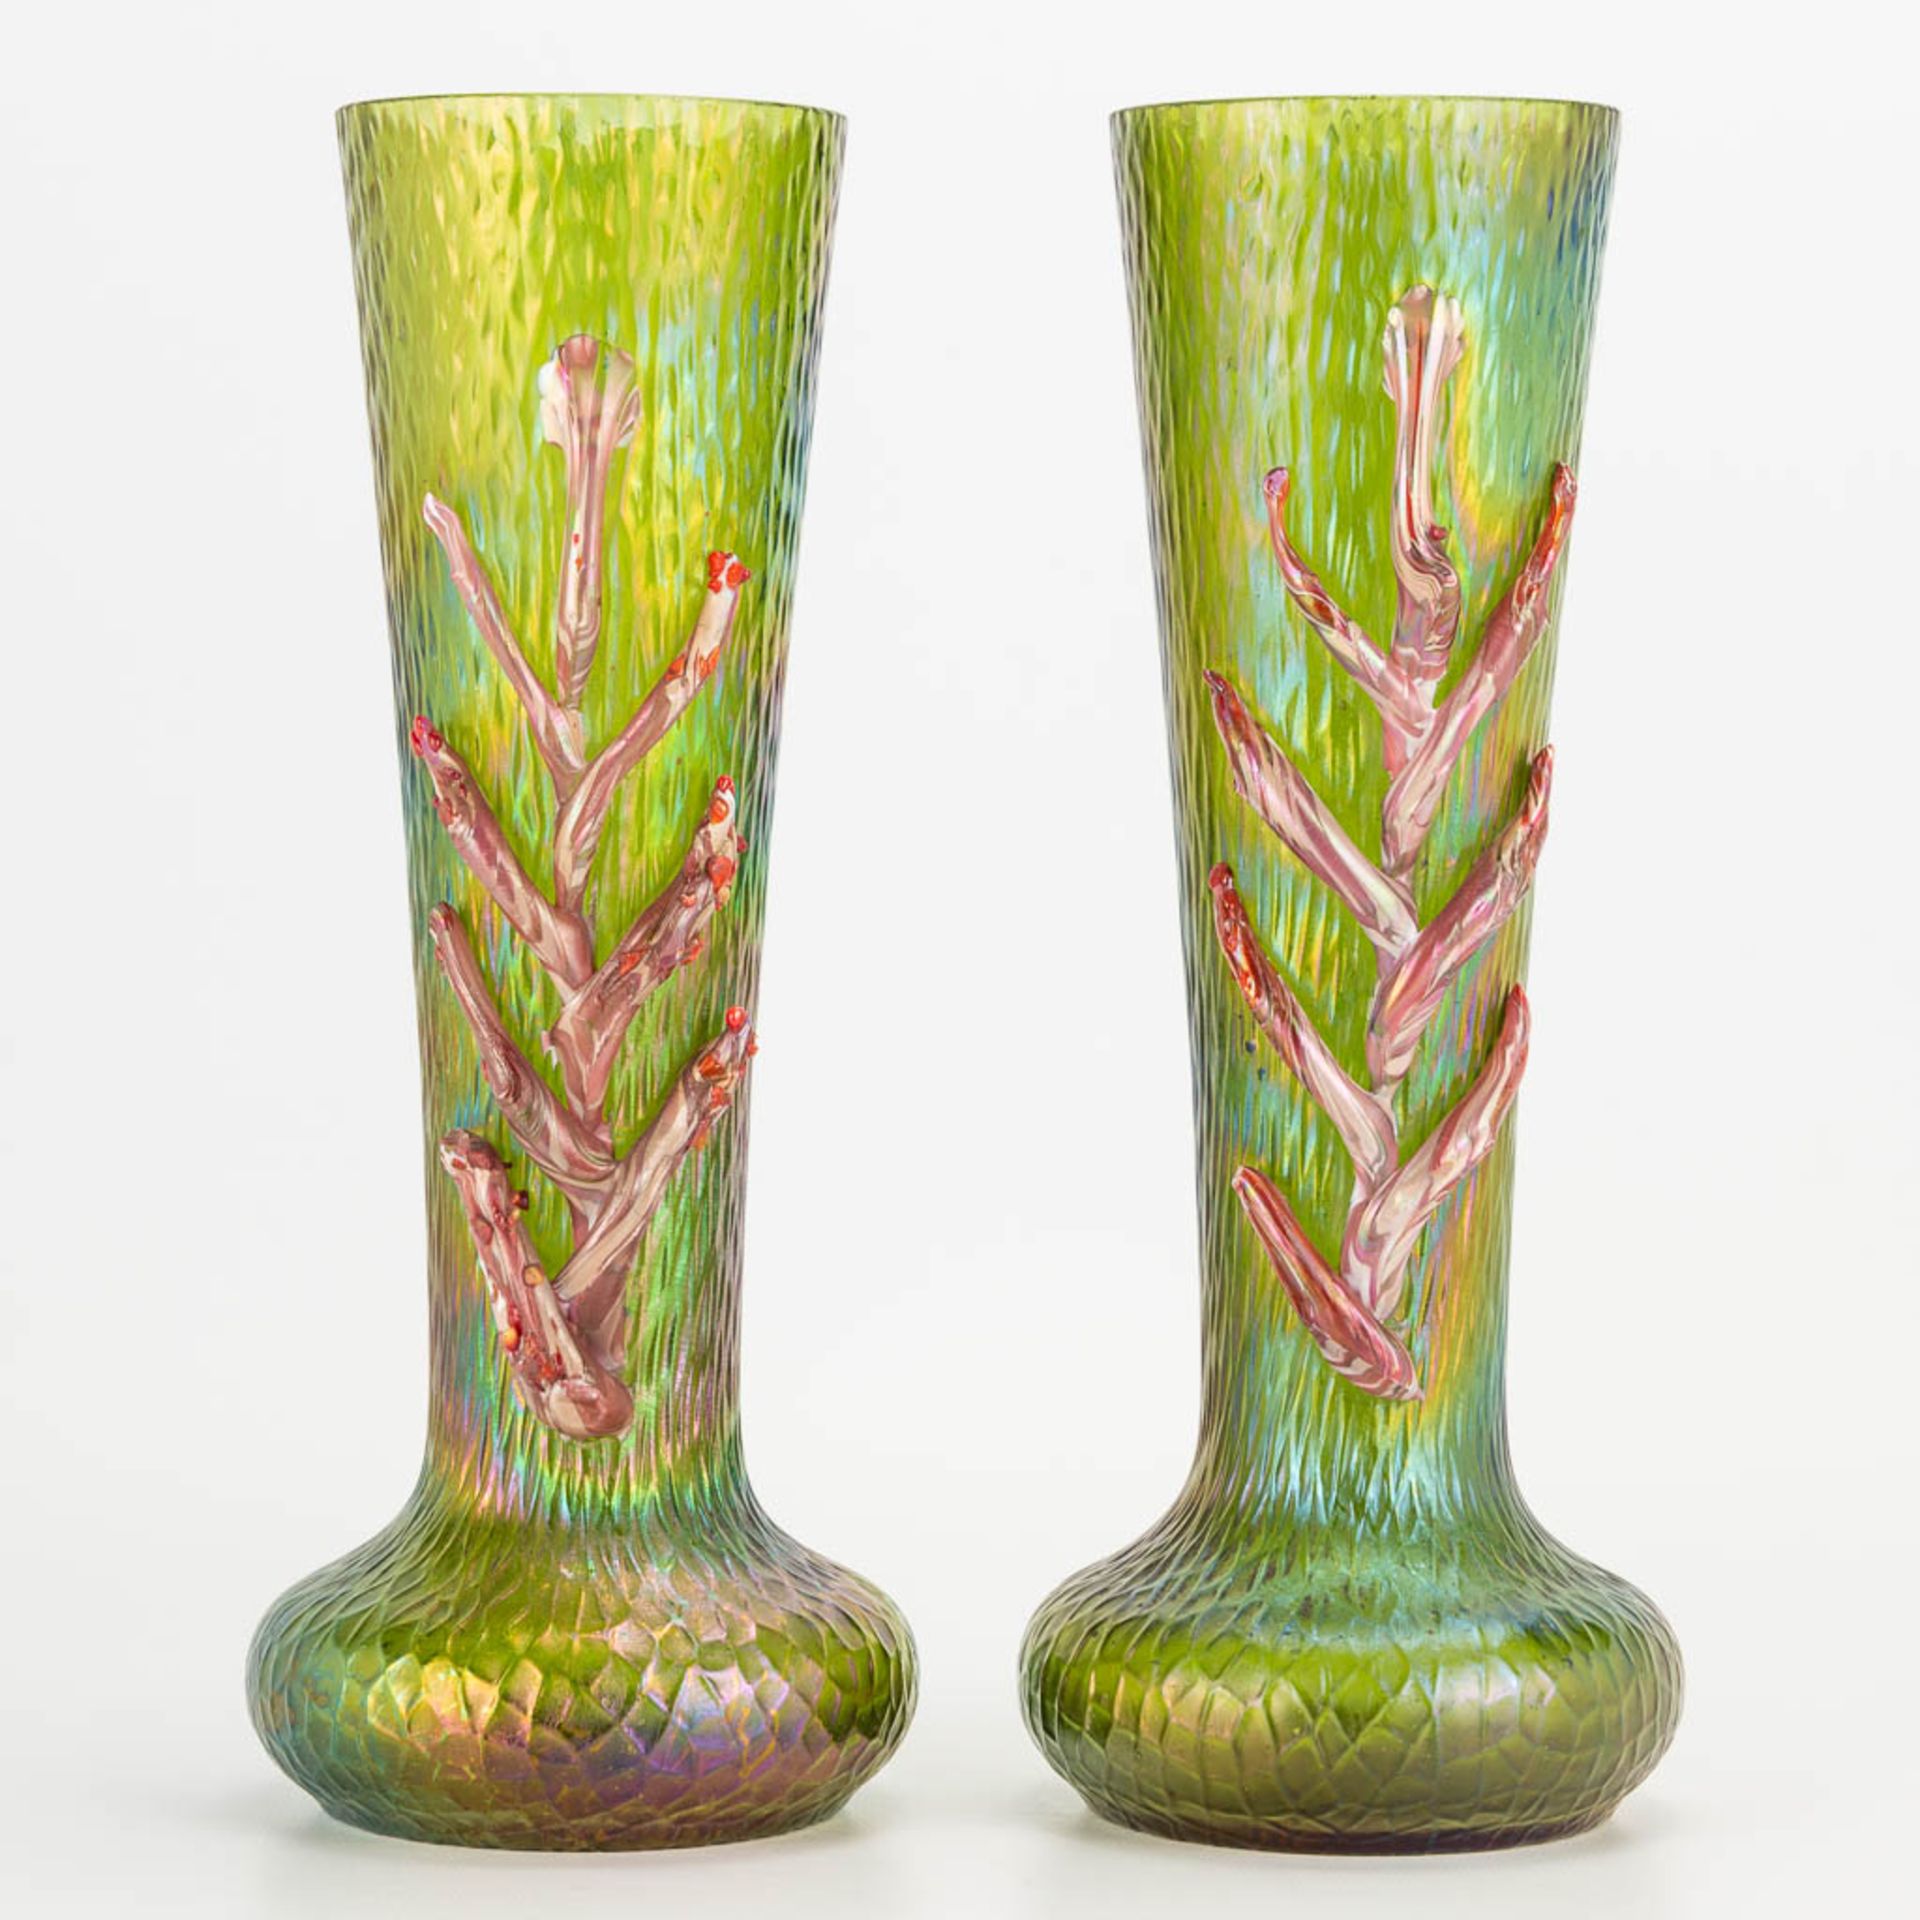 Pallme Kšnig a pair of p‰te de verre vases in art nouveau style. (H:27cm)